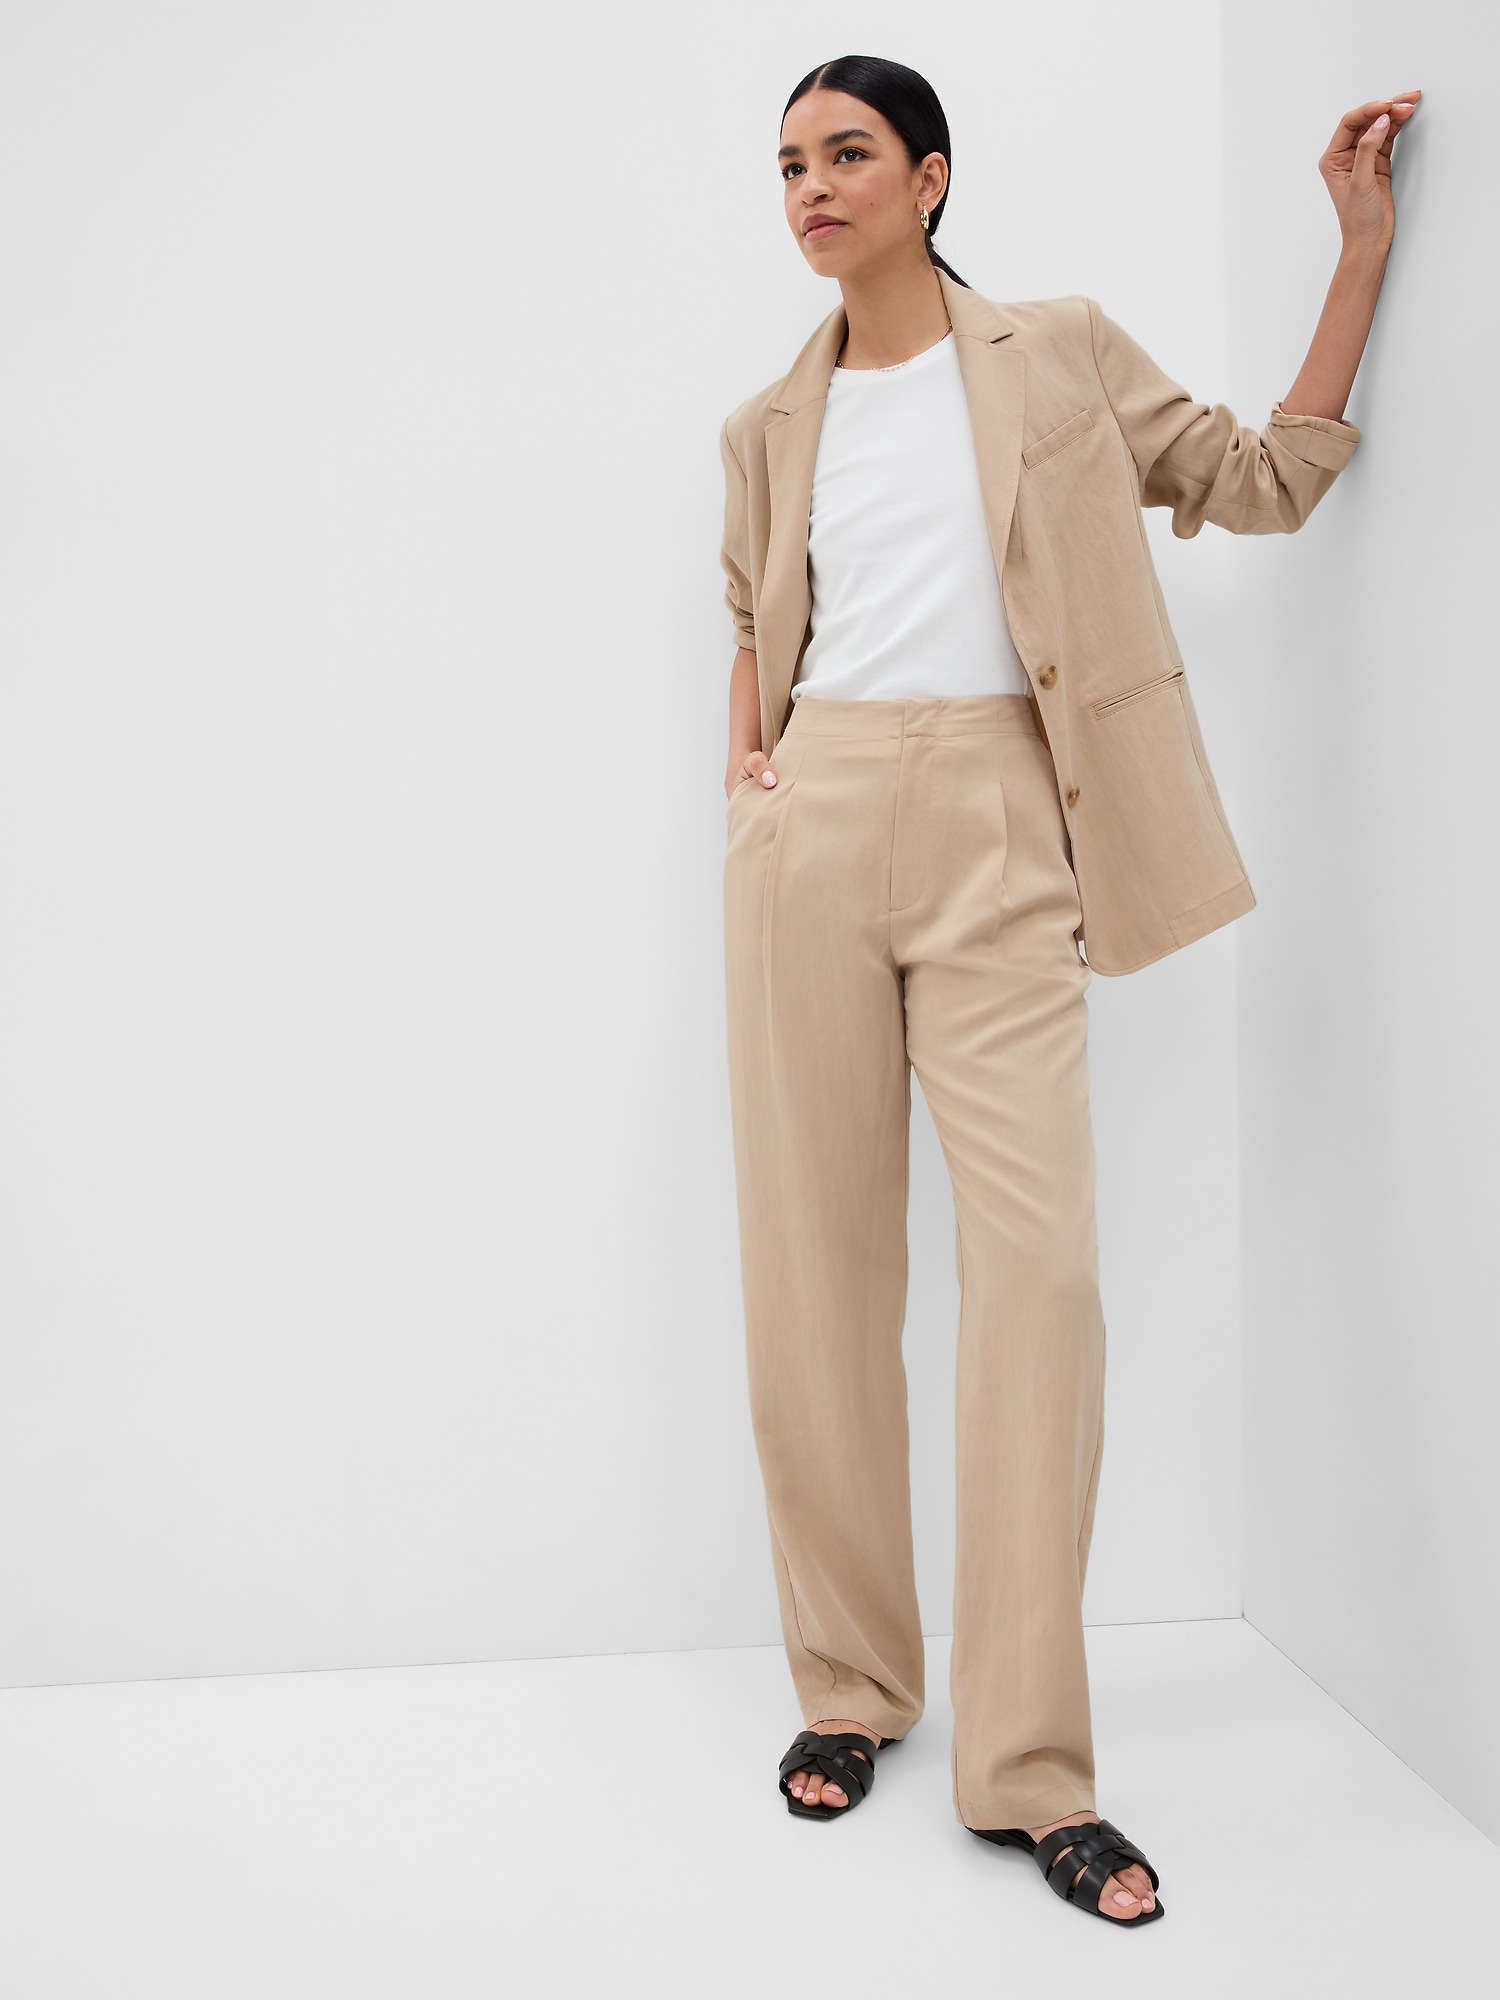 Lavender Pant Suit for Women, Office Pant Suit Set for Women, Blazer Suit  Set Womens, High Waist Straight Pants, Blazer and Trousers Women - Etsy |  Suits for women, Pant suits for